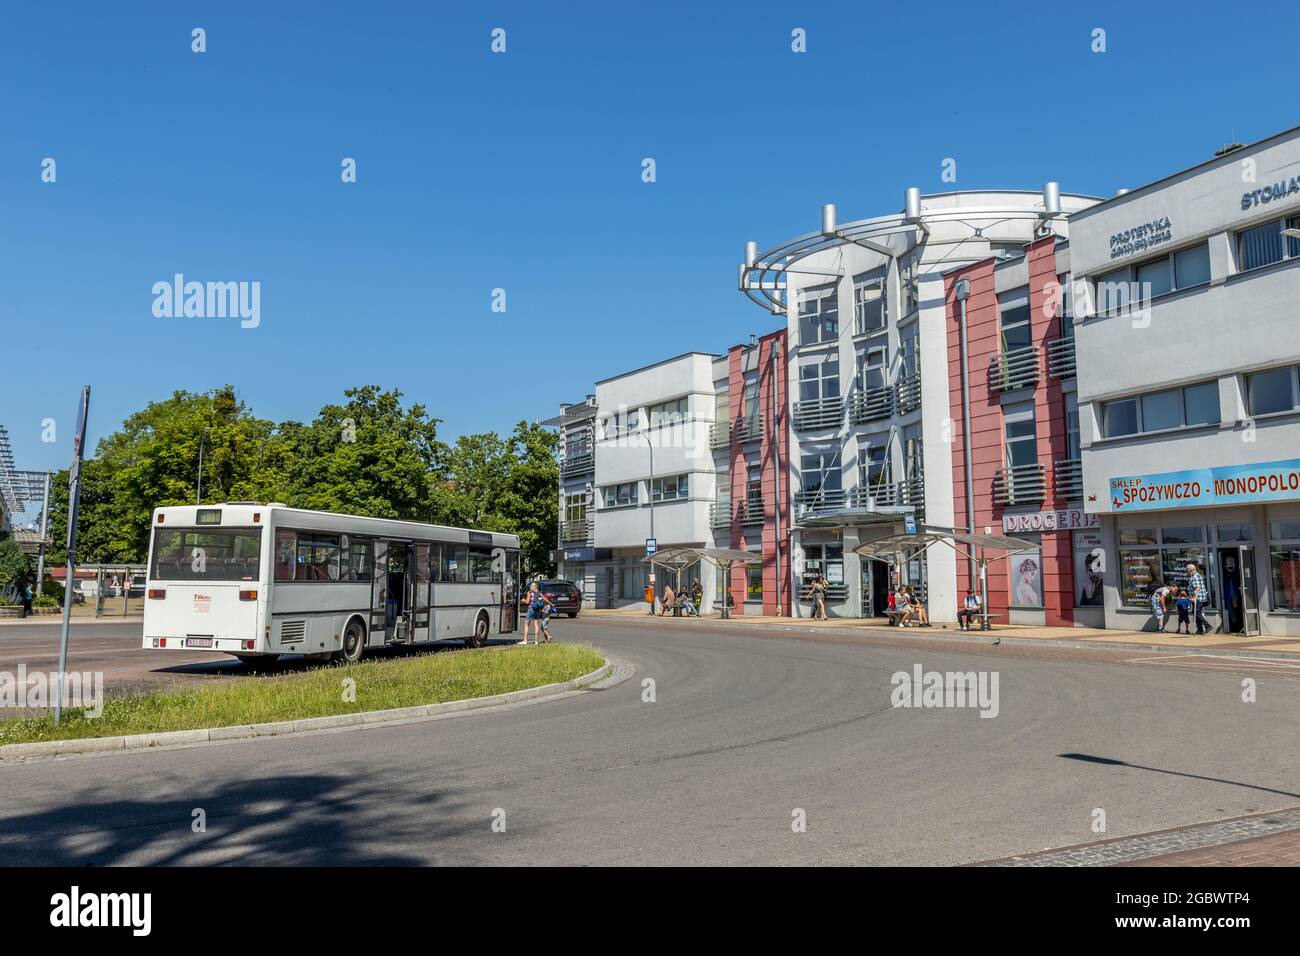 ELBLA, POLAND - Jun 18, 2021: The buildings near the train station in  Elblag, Poland Stock Photo - Alamy